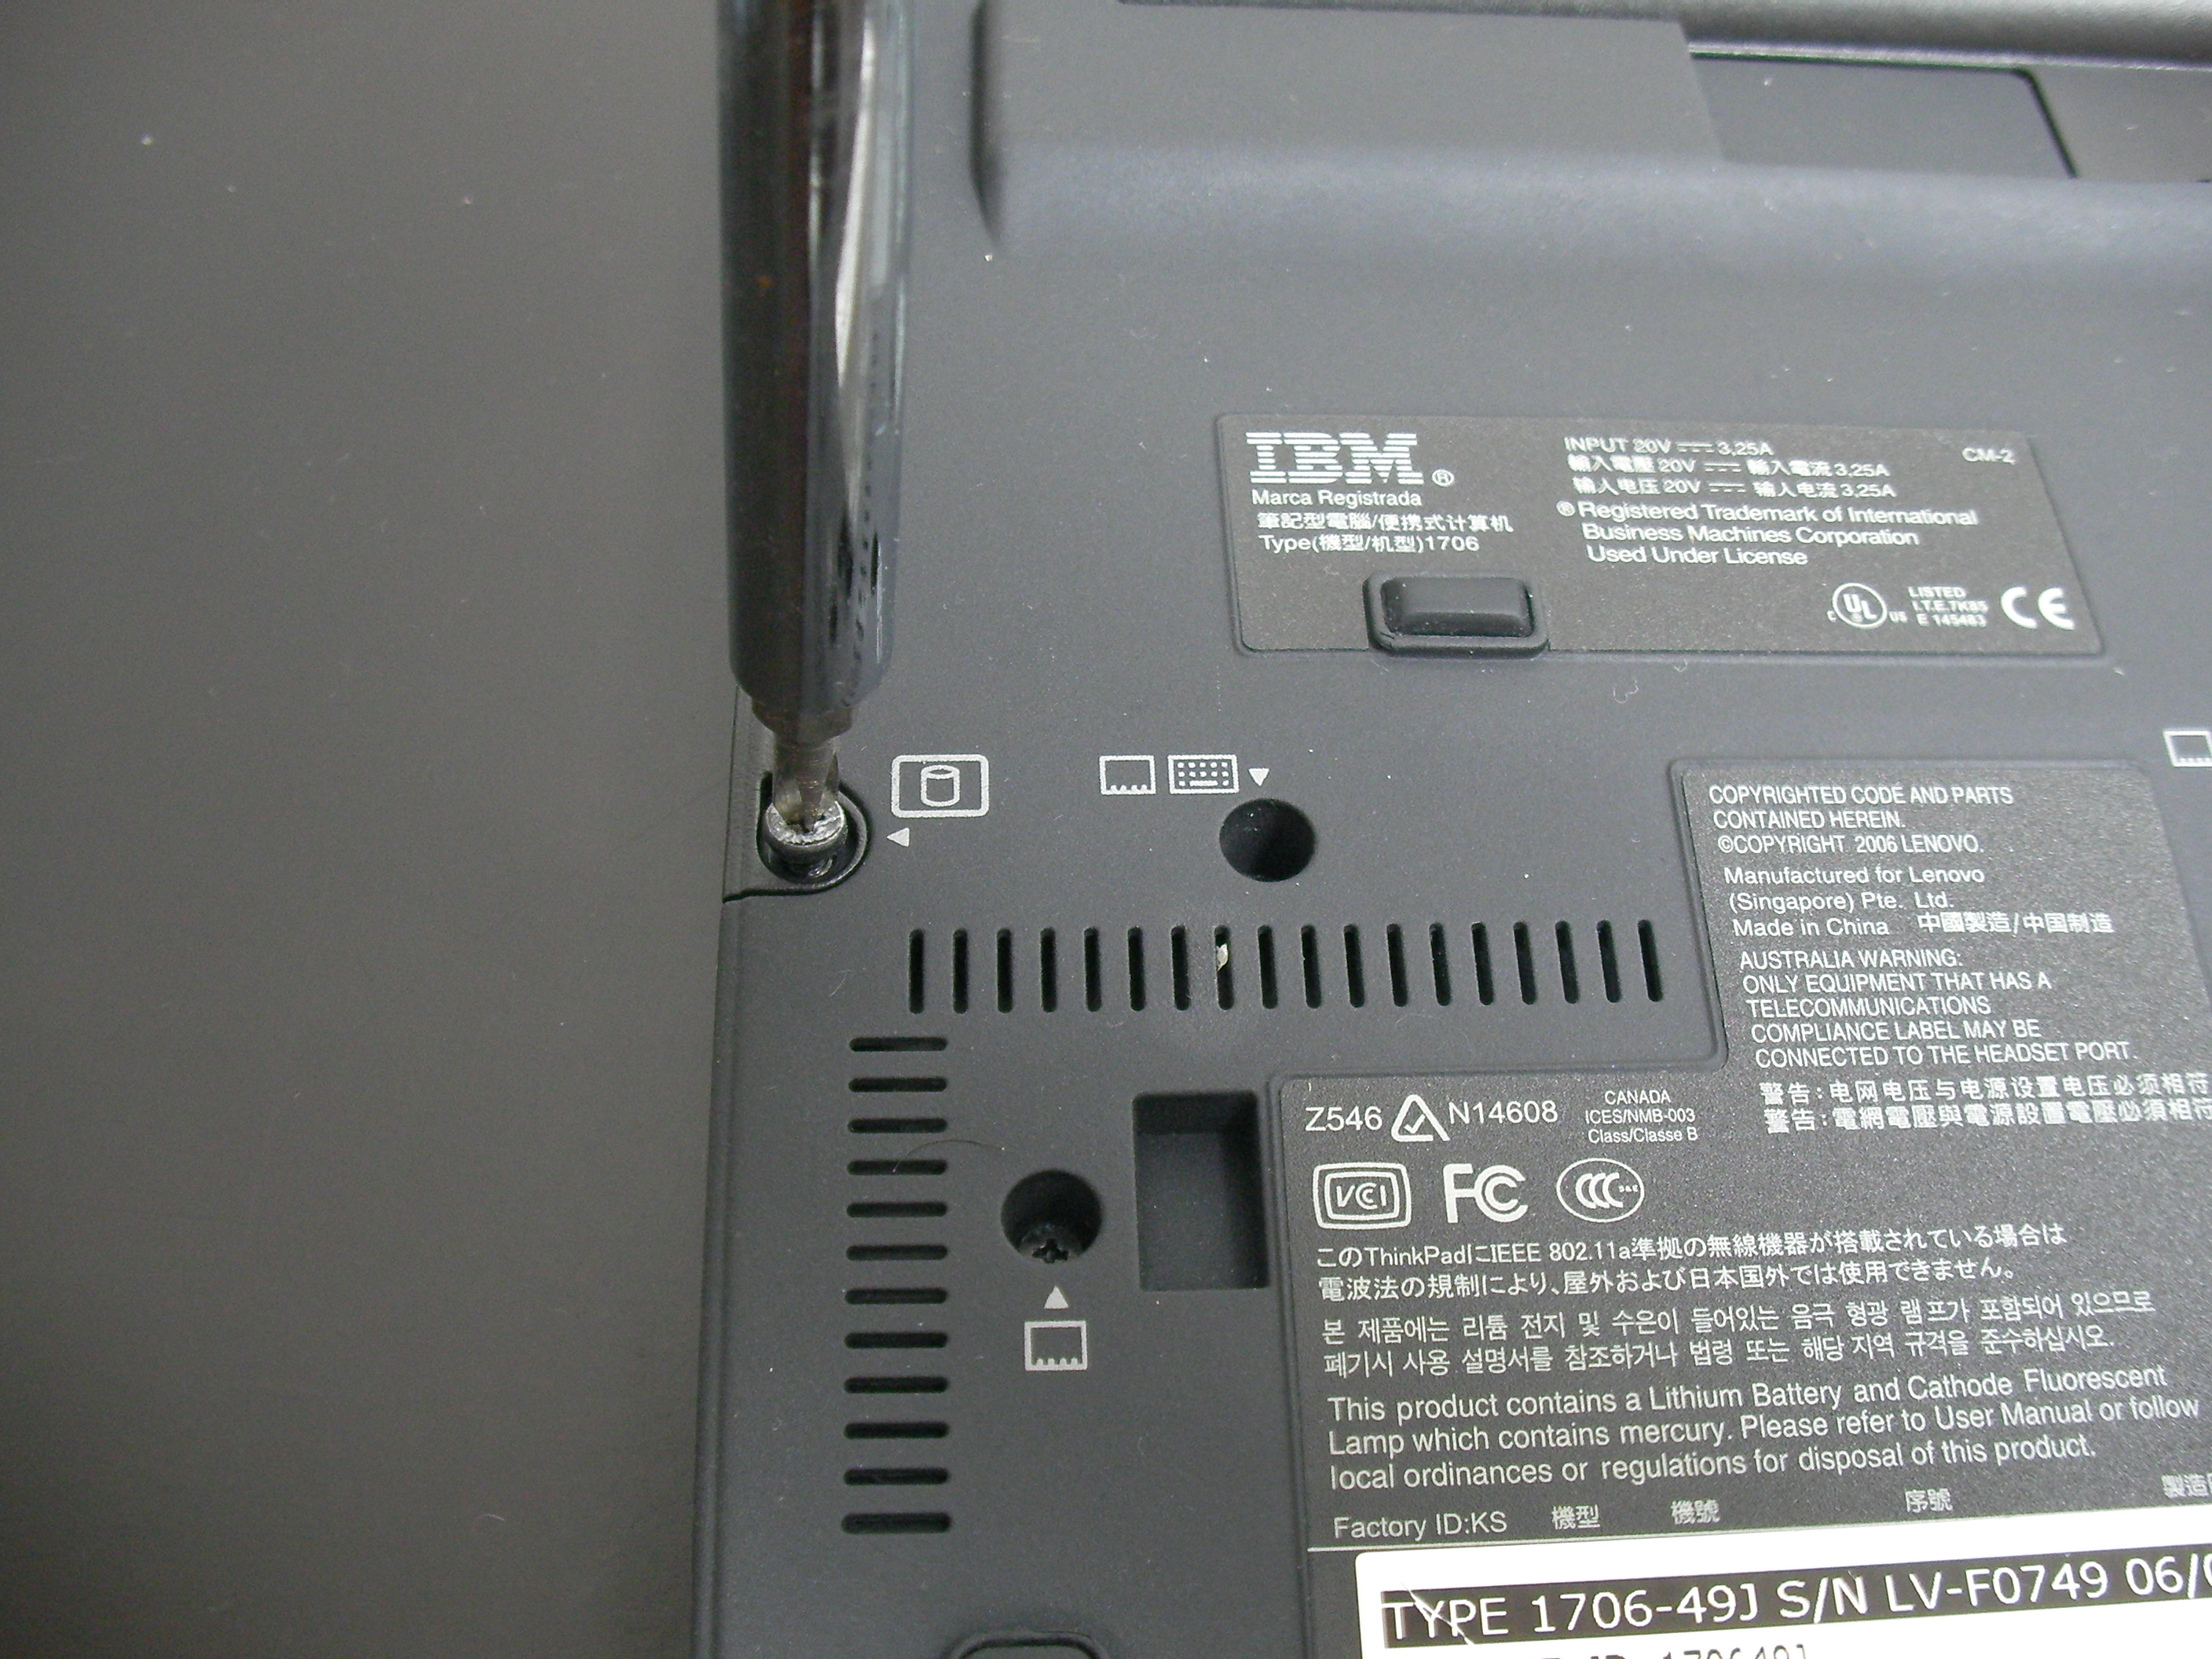 ThinkPad X60 で SSD の換装をしてみた : にぽたん研究所